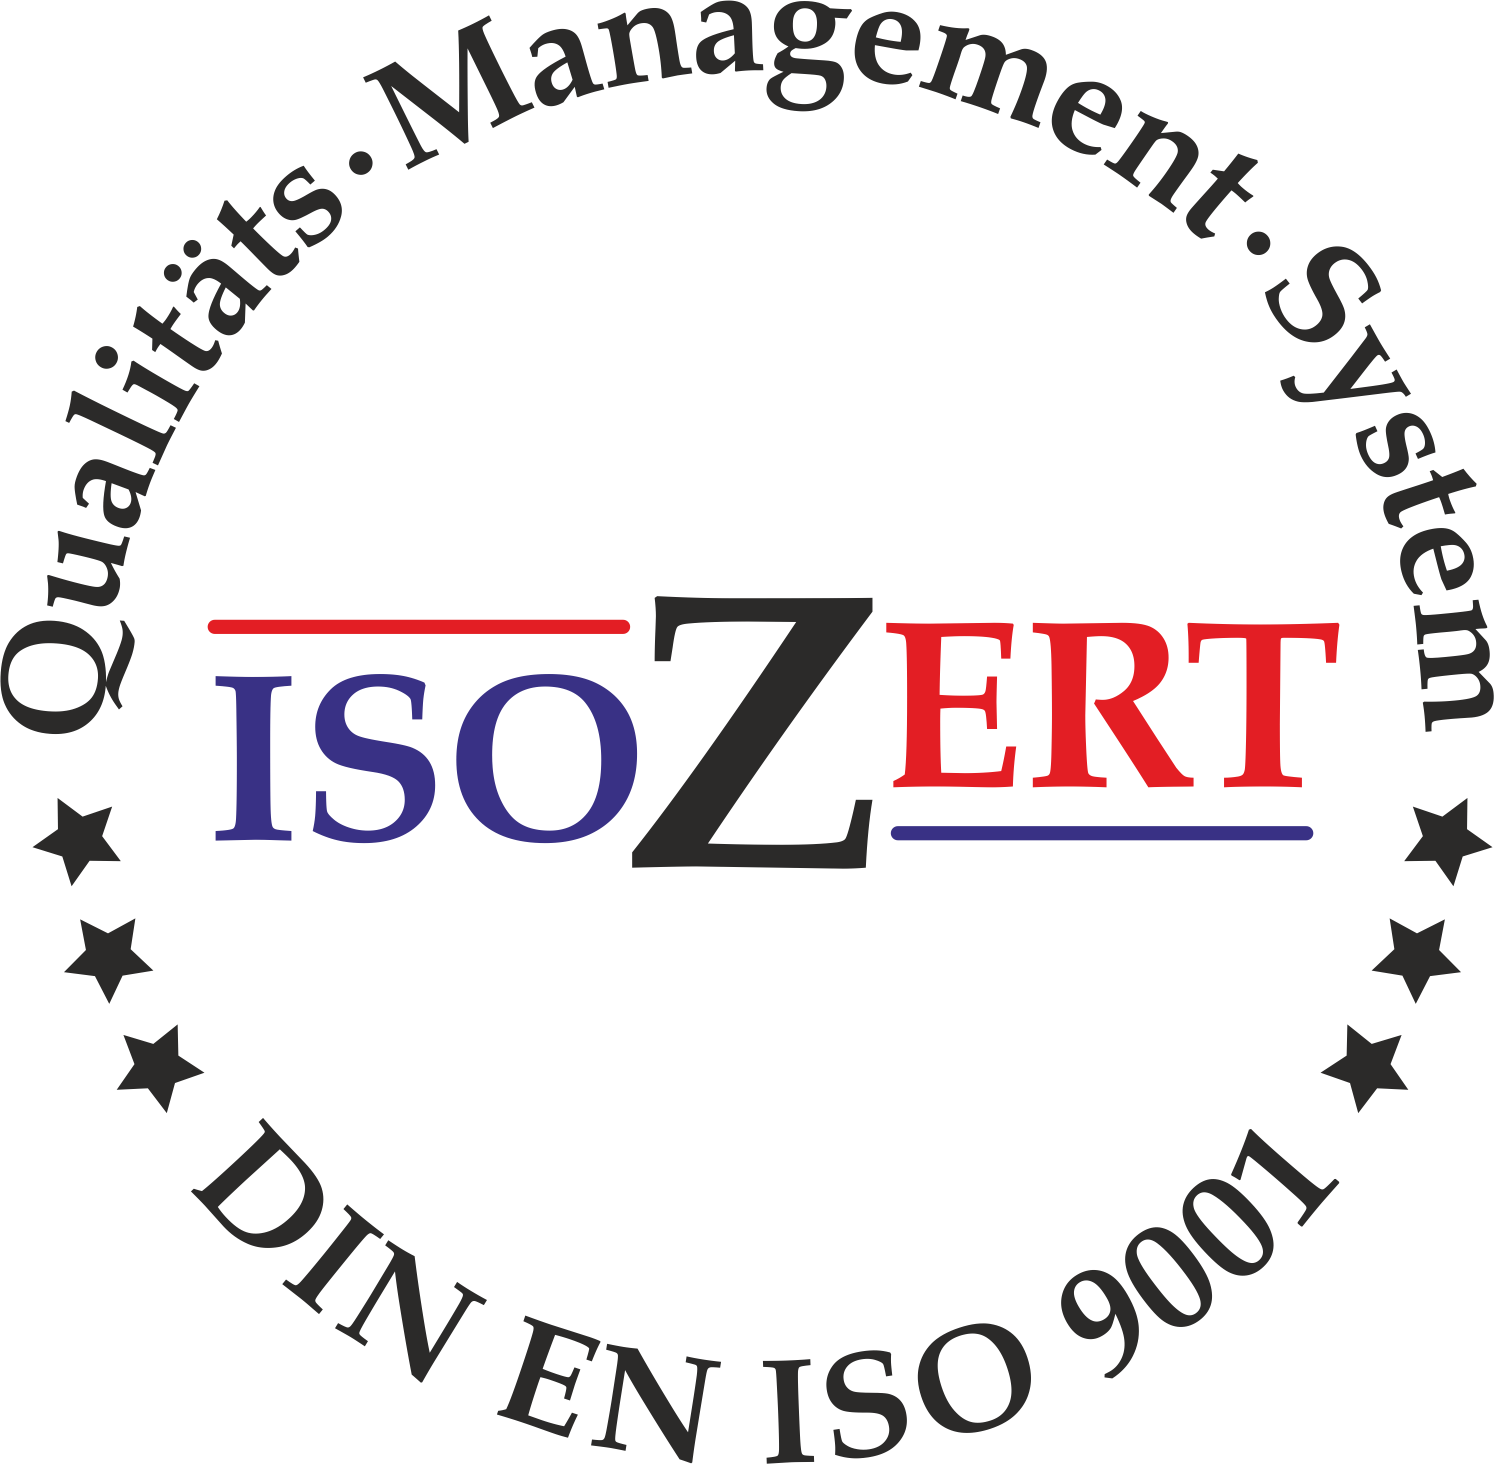 Wir sind nach ISO 9001:2015 zertifiziert.